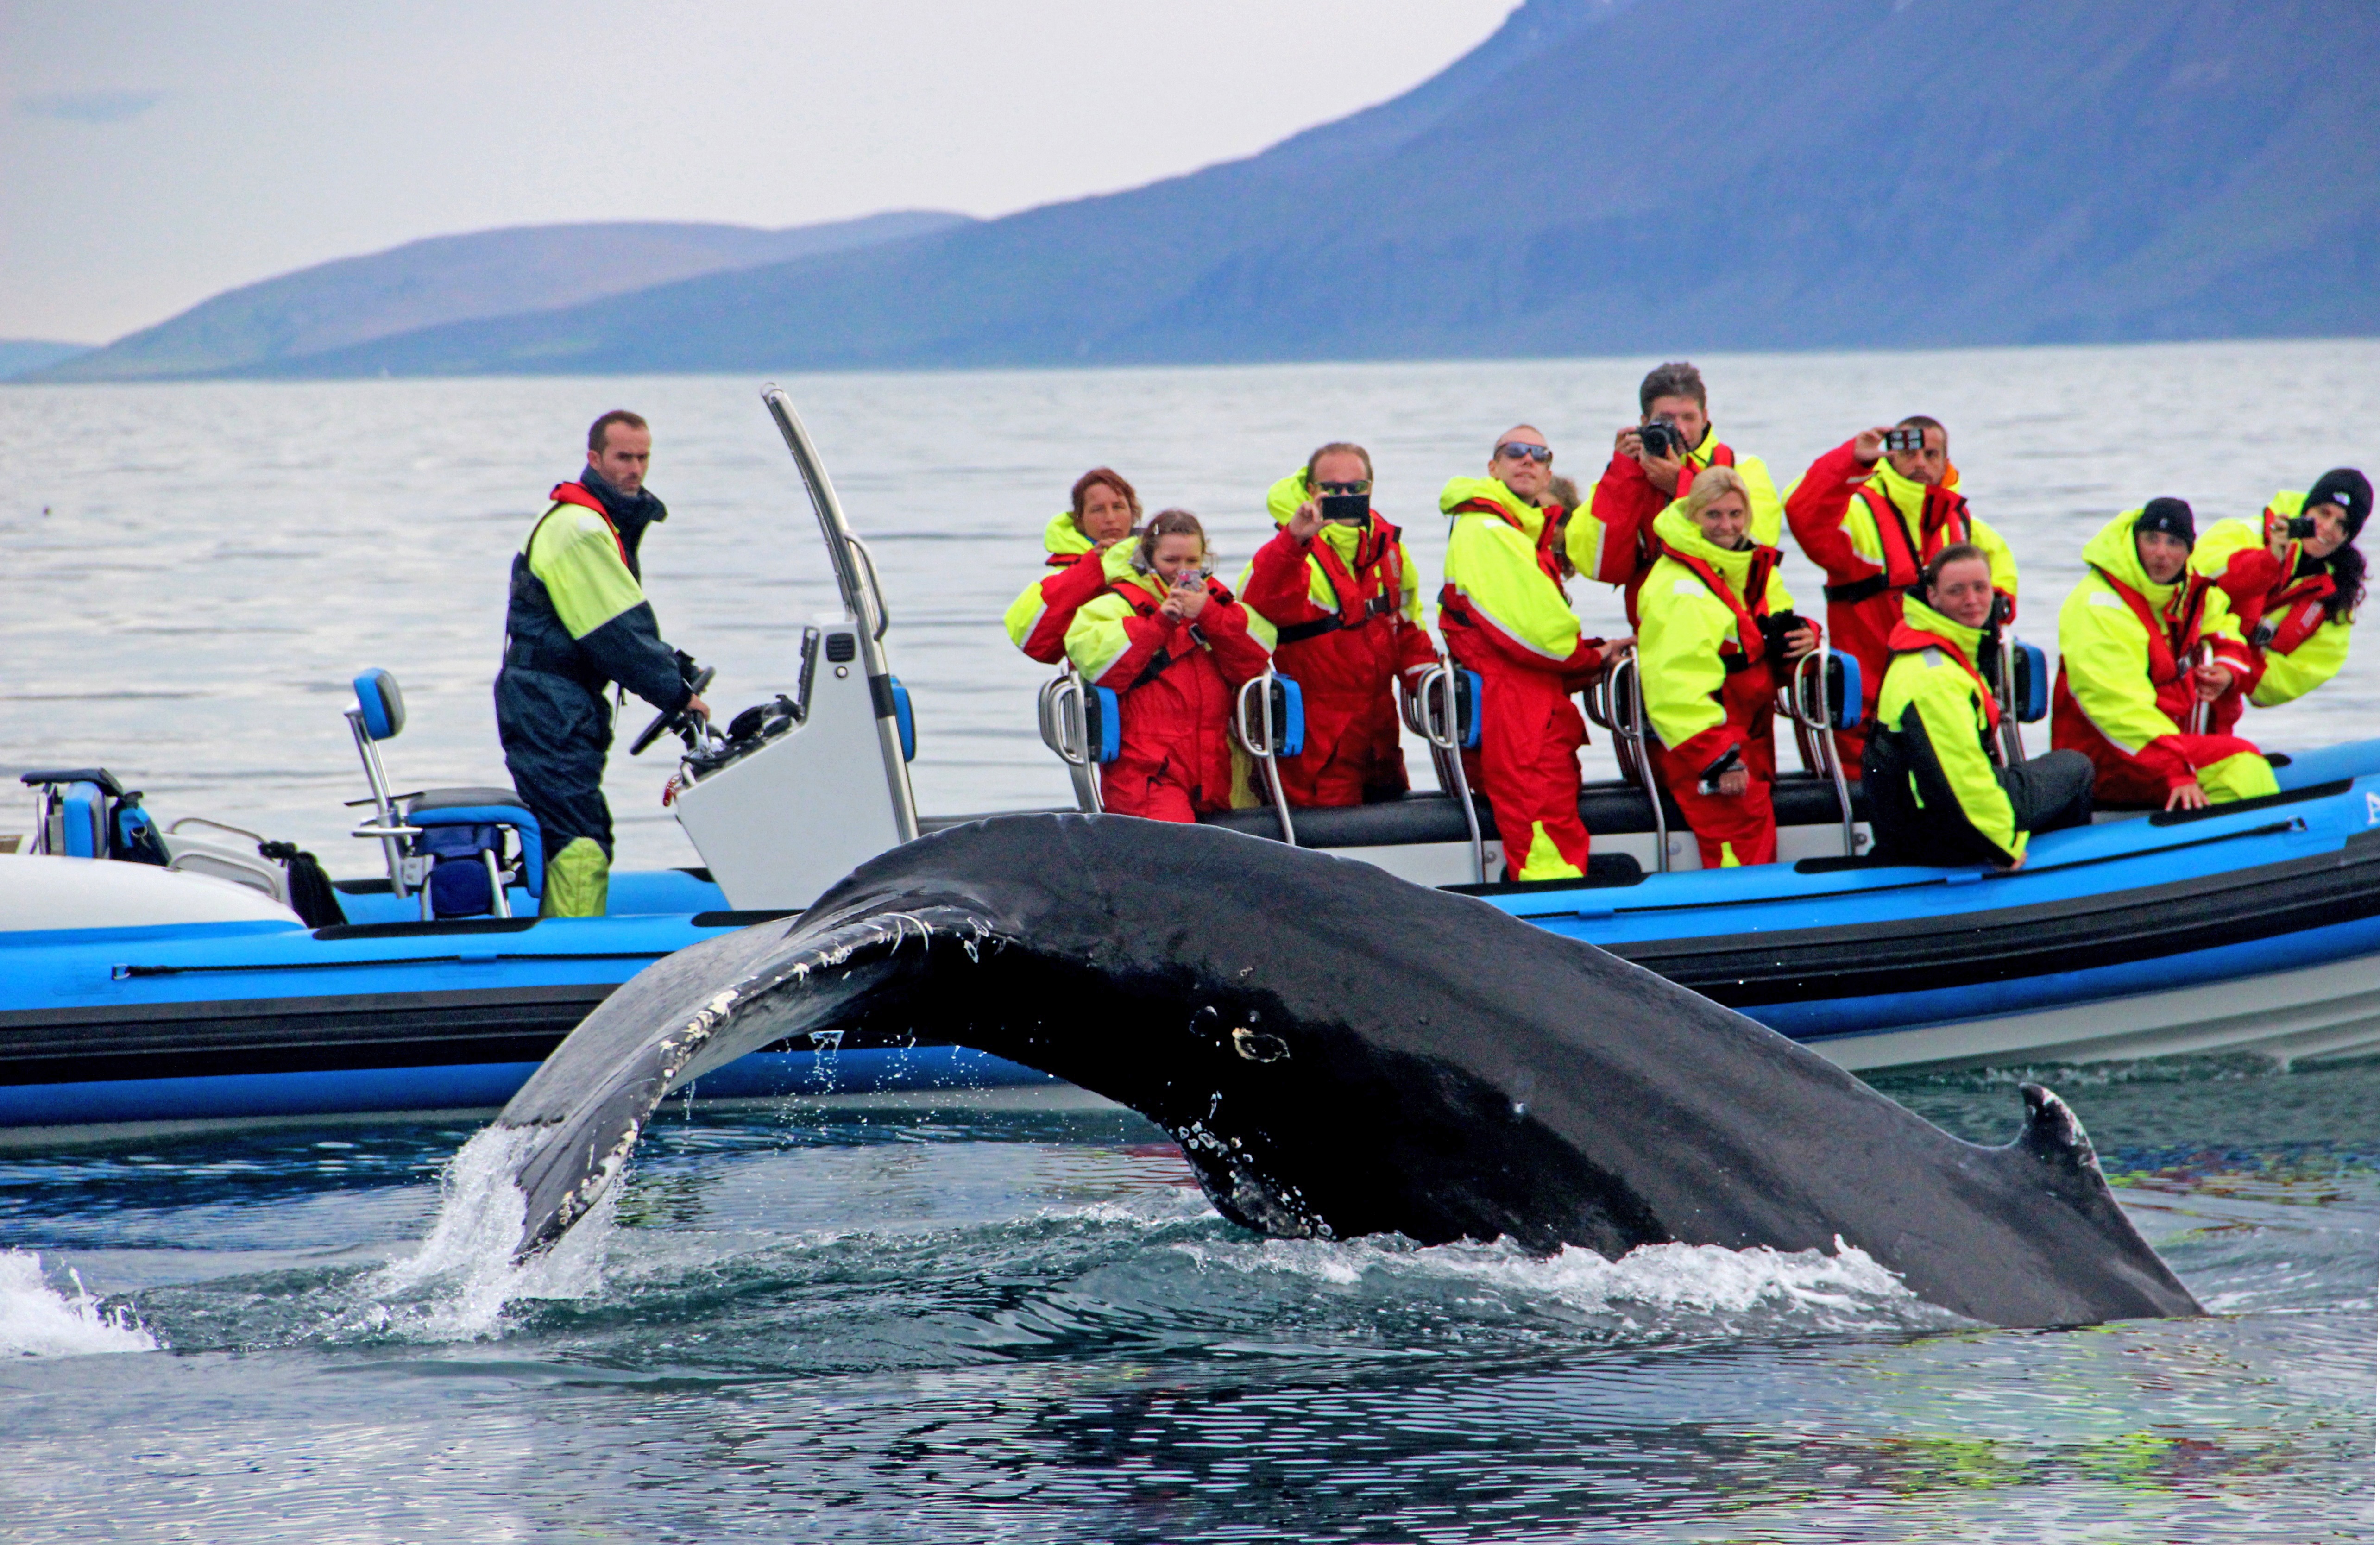 Тур в мурманск на китов. Китовое сафари Исландия. Китобойный промысел в Исландии. Китобойный промысел Гренландии. Китовое сафари в Норвегии.